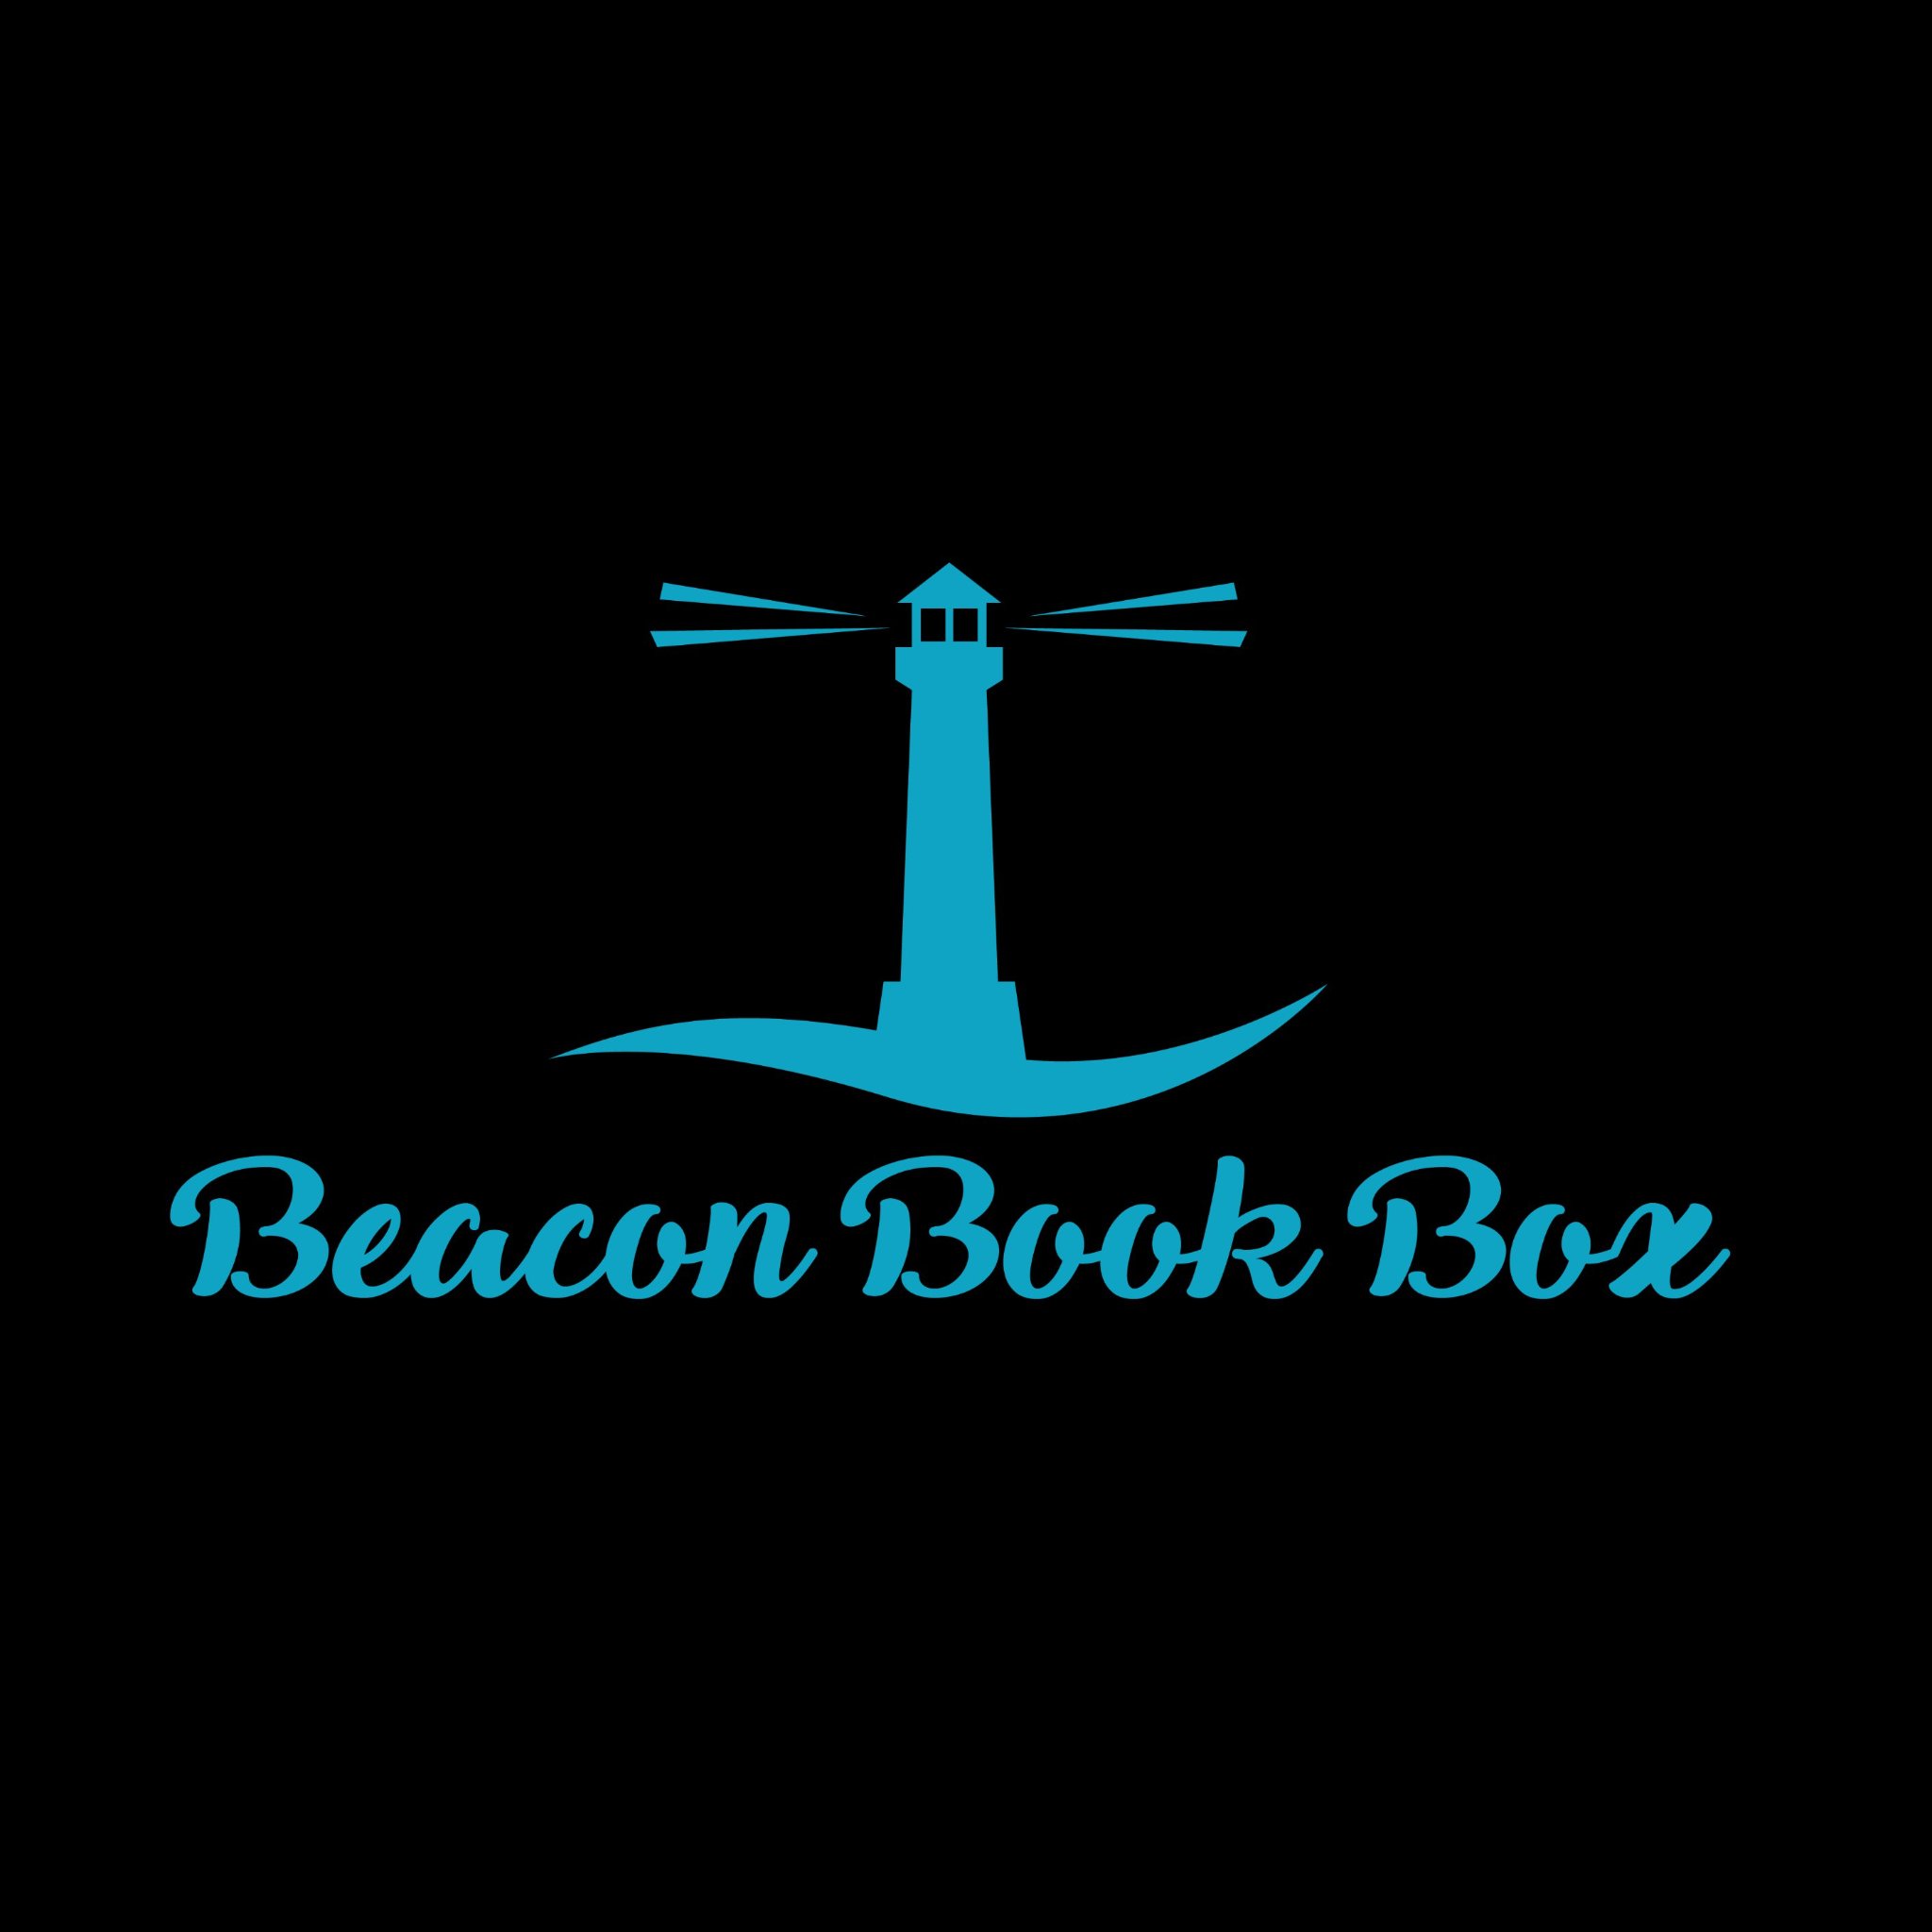 Beacon Book Box logo